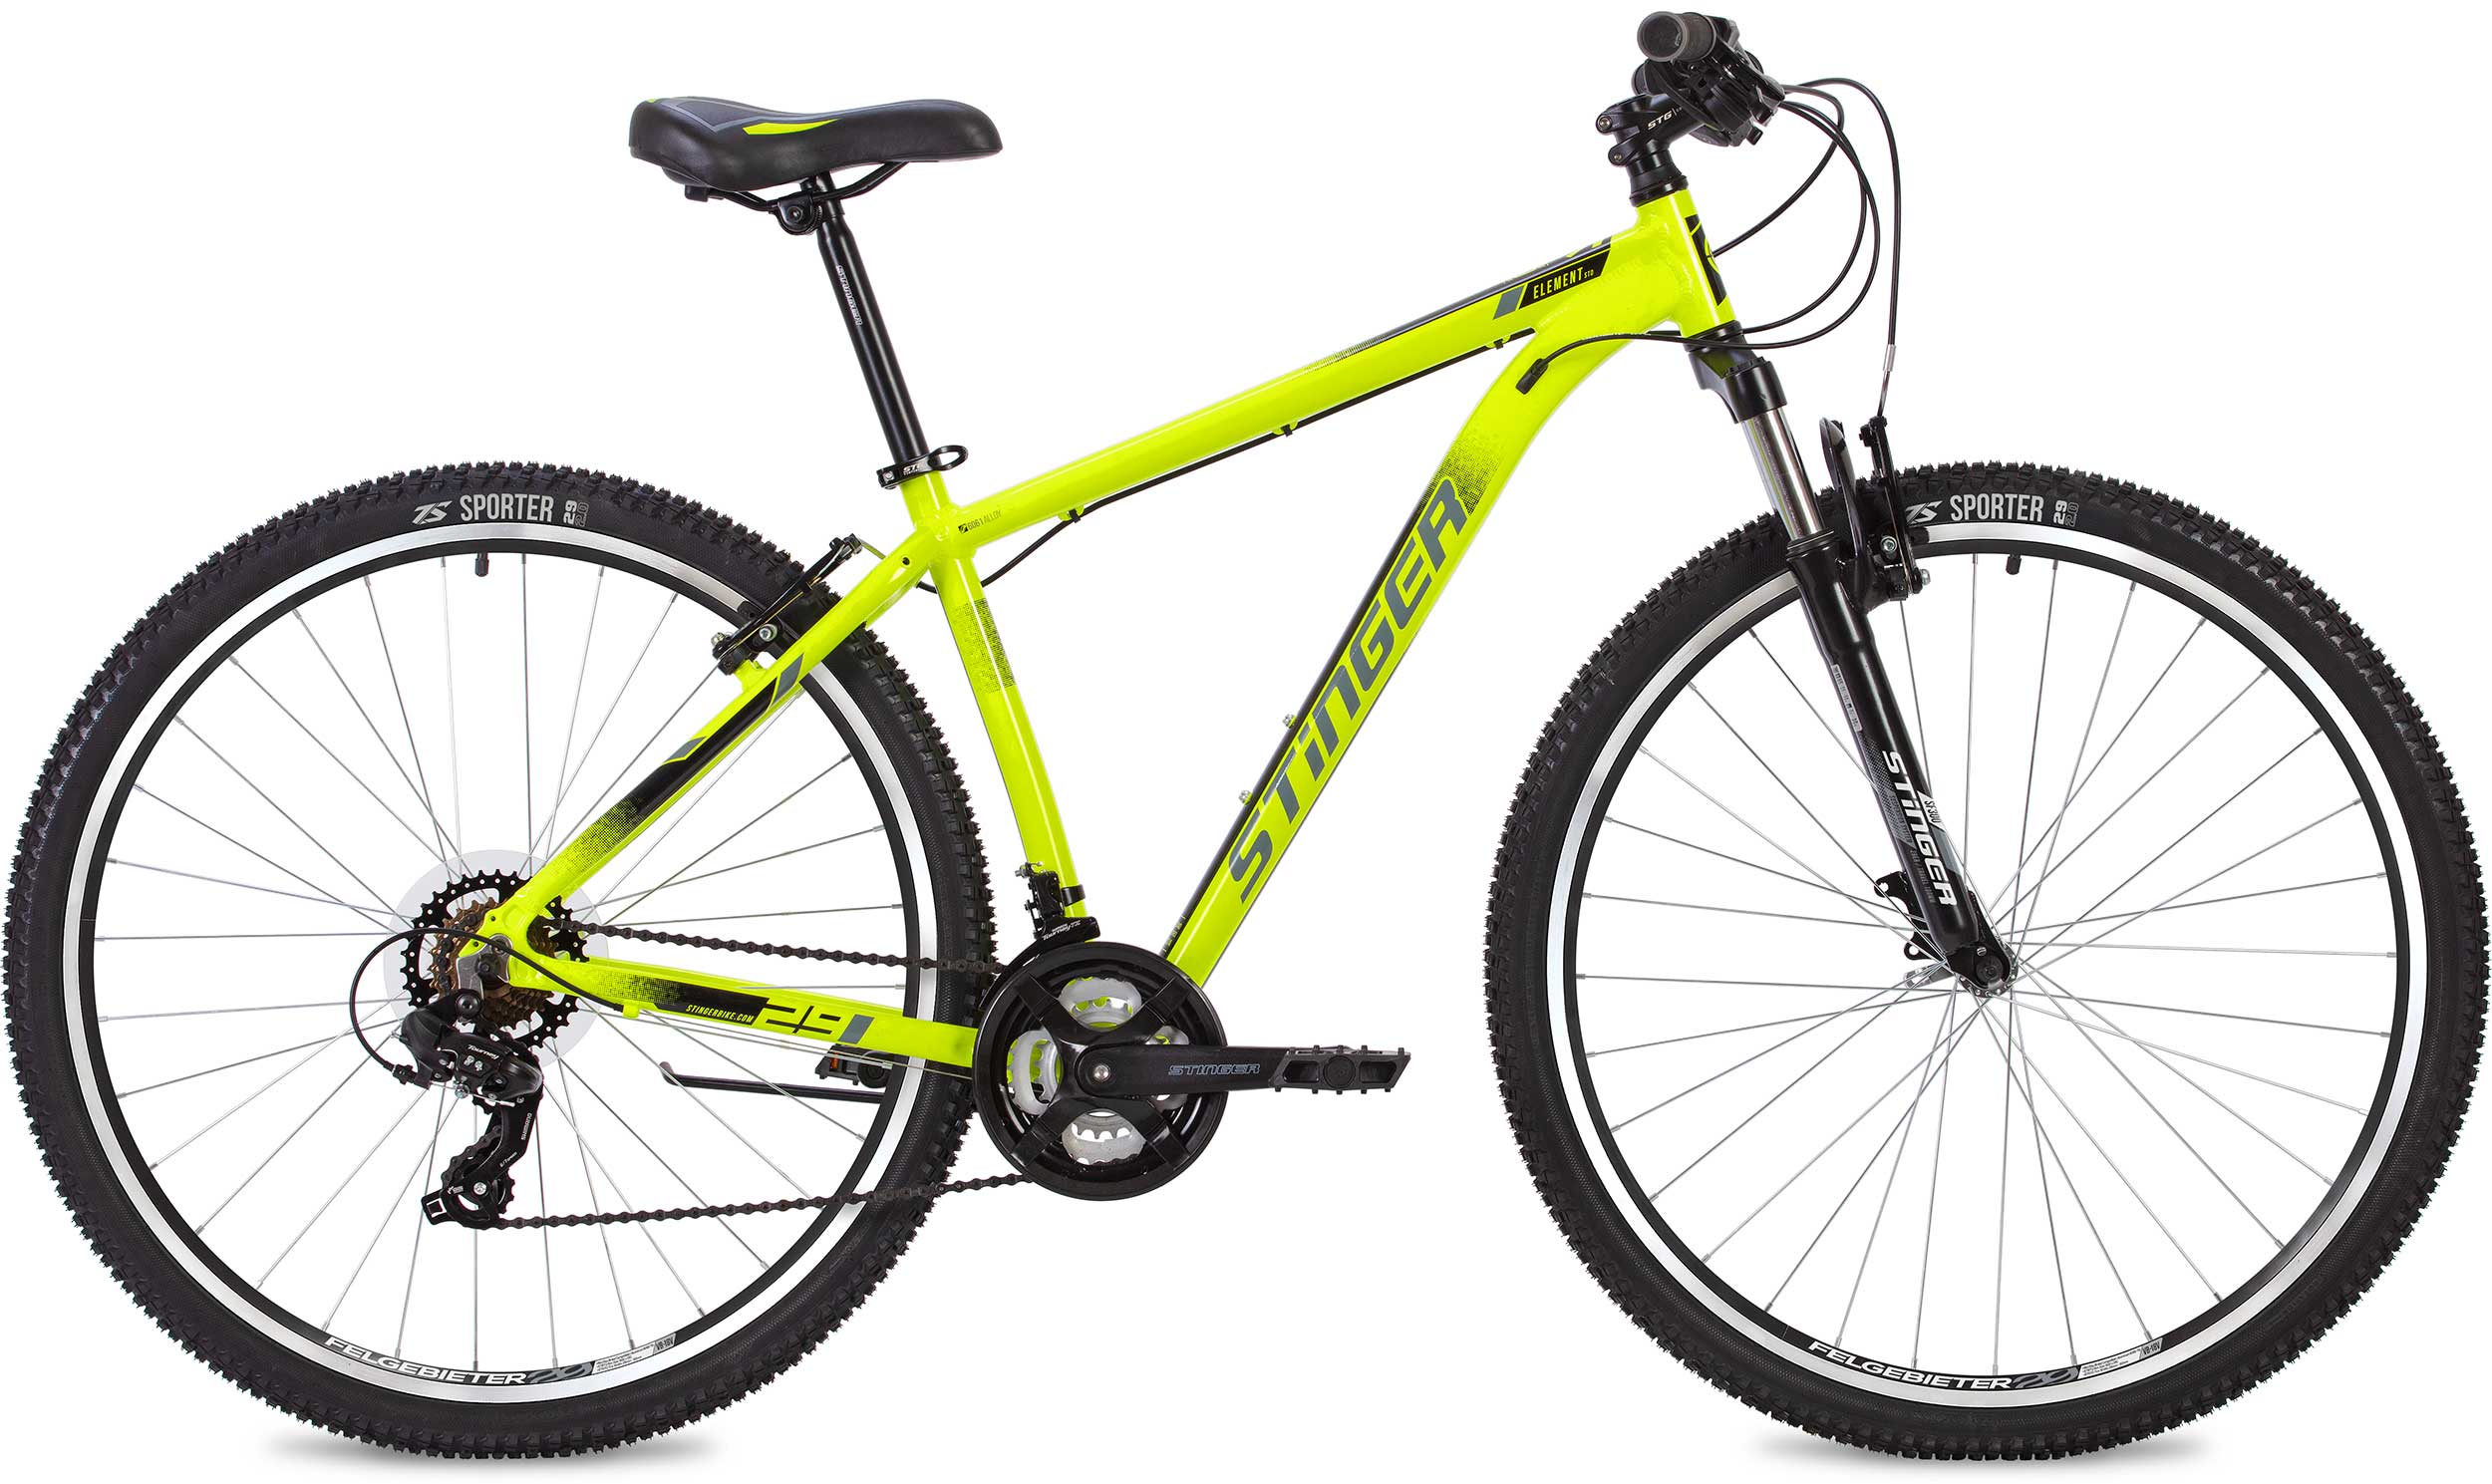  Отзывы о Горном велосипеде Stinger Element STD 26 2020